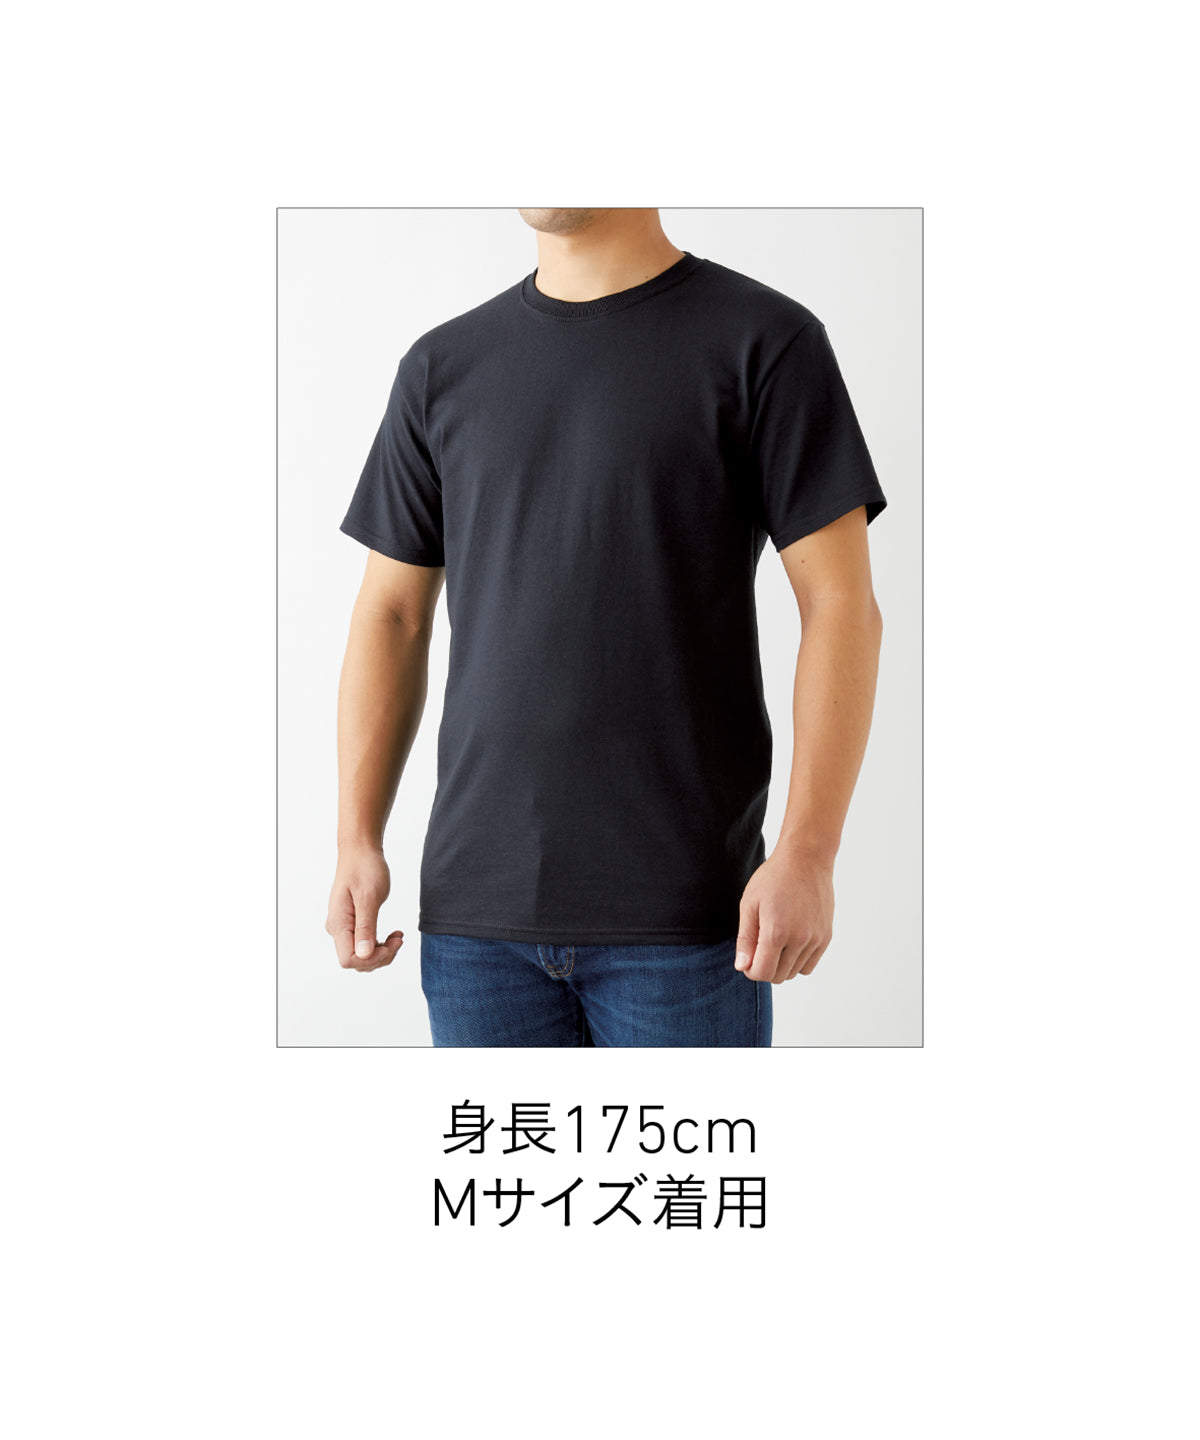 5.4oz DRI-POWER Tシャツ (JZ-29MR)